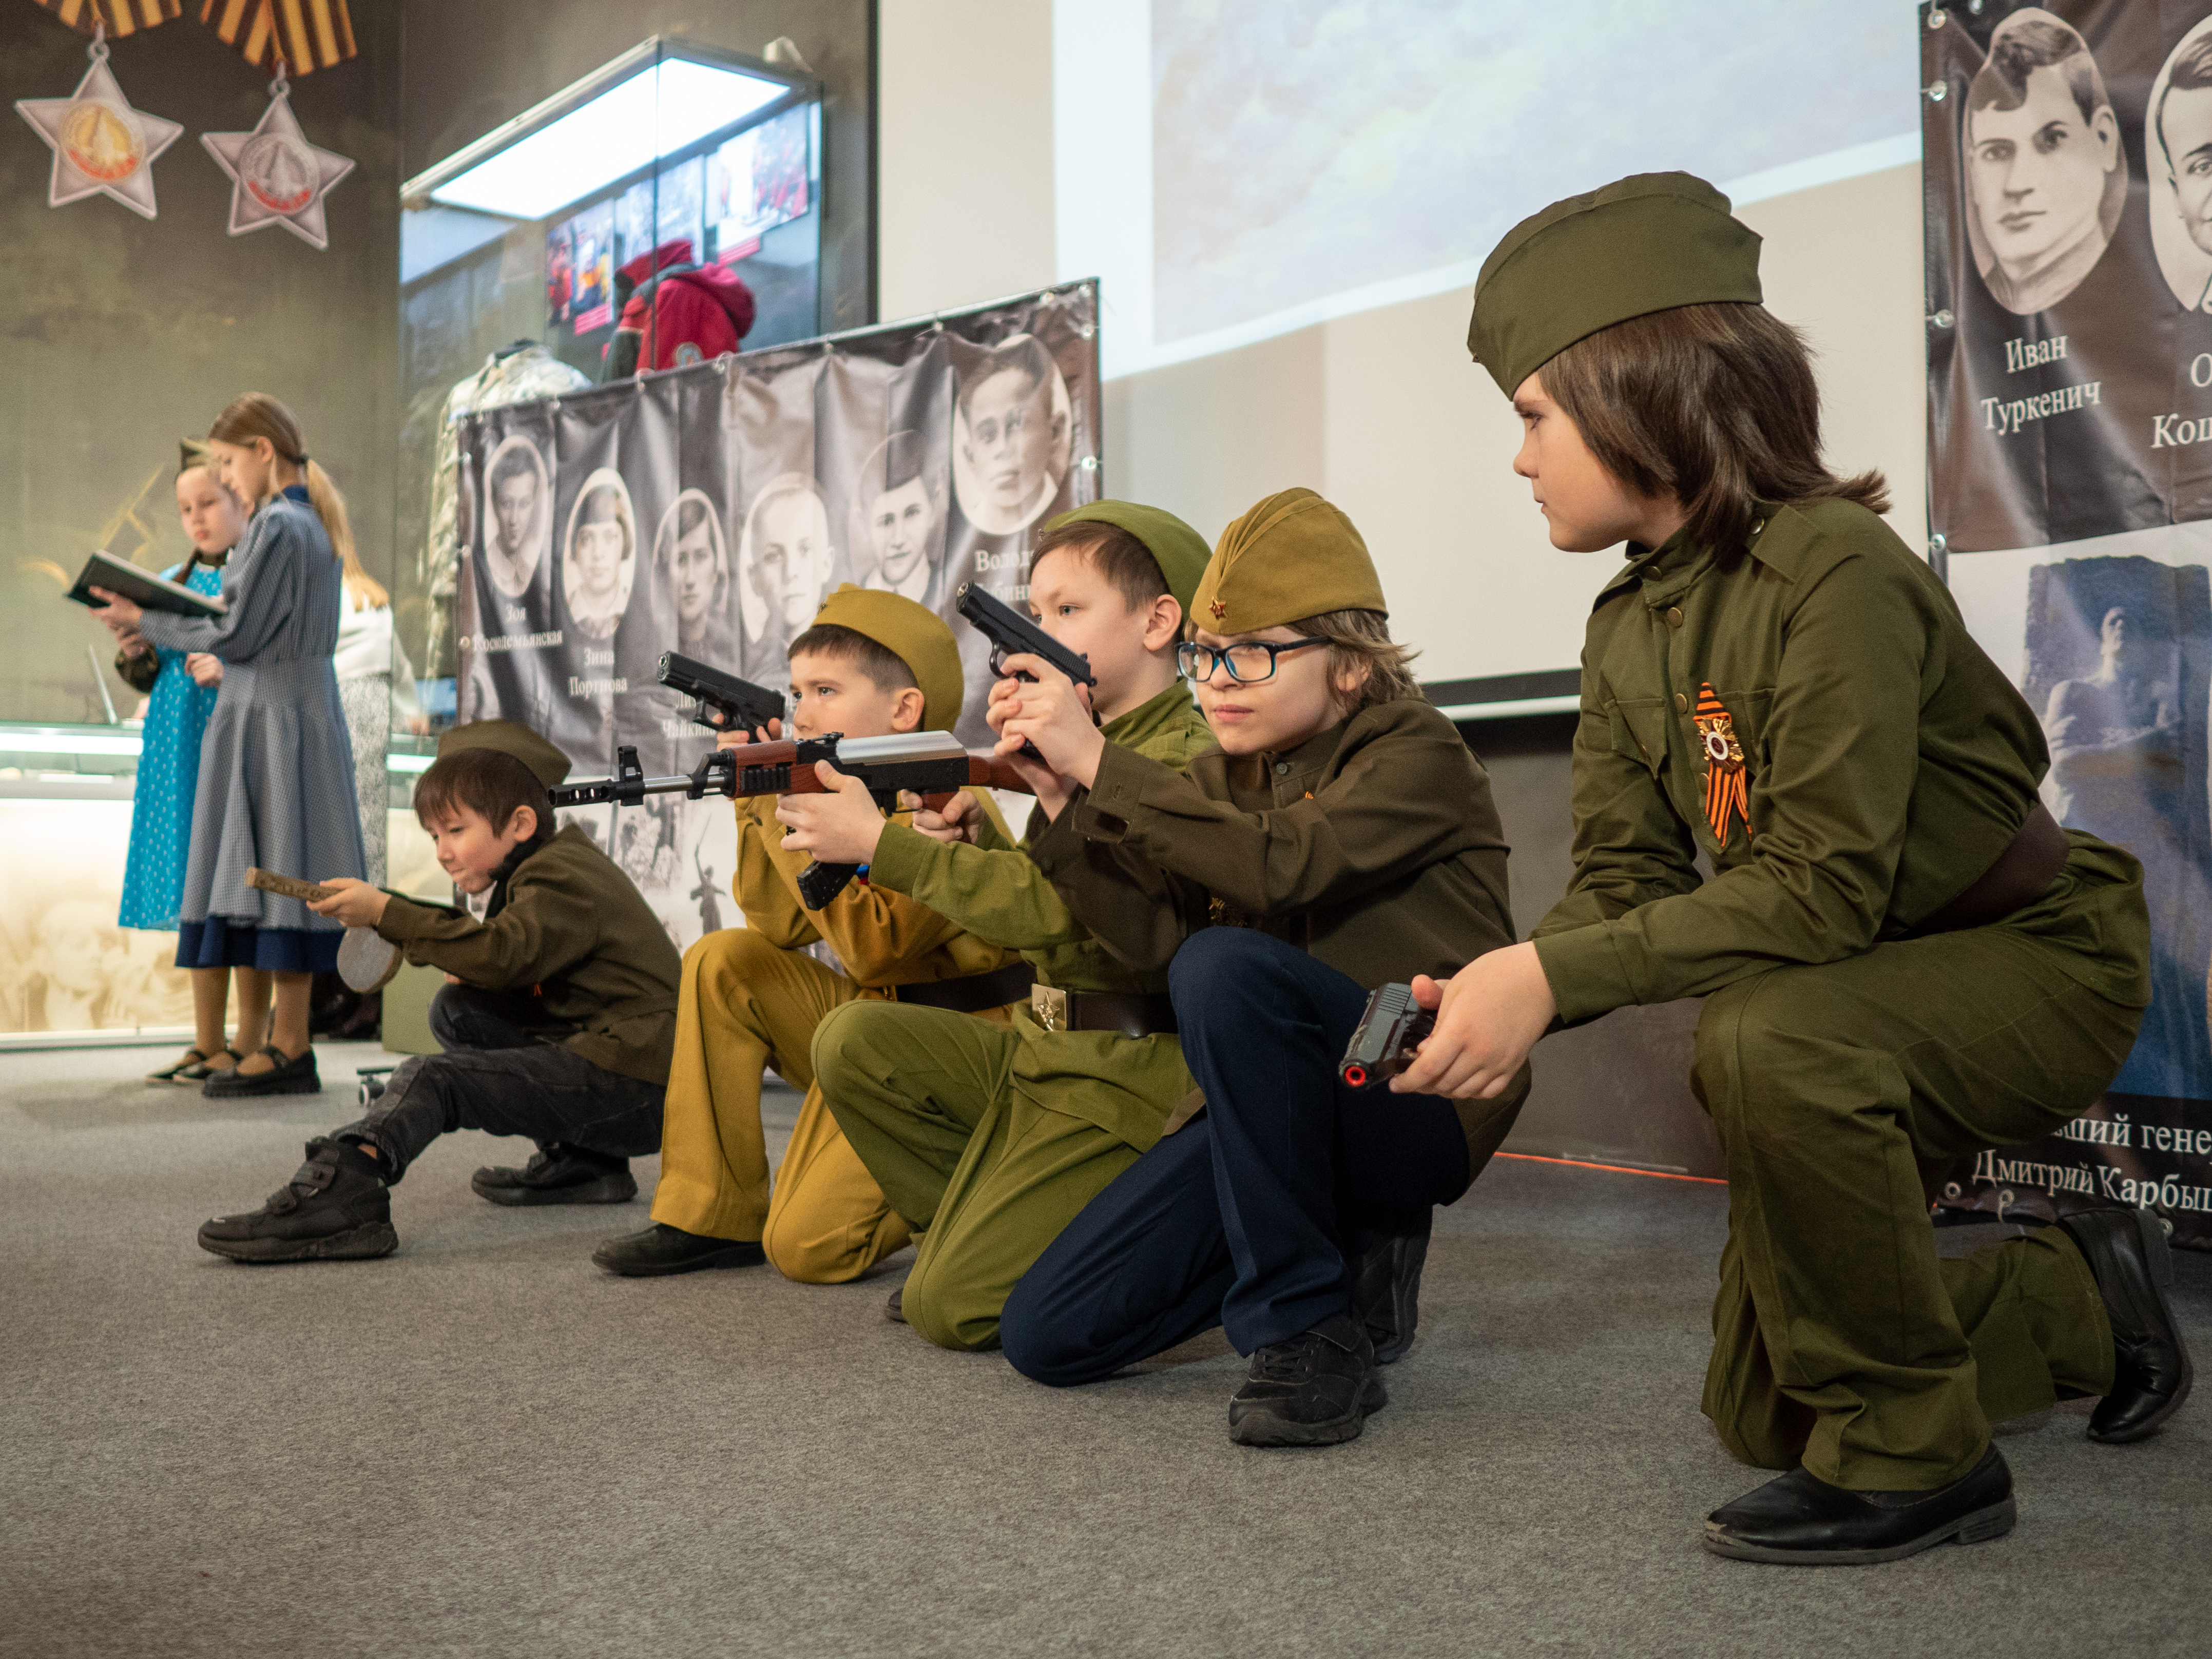 Юные герои 'Радуги' штурмуют Кремль ,Юные герои «Радуги» штурмуют Кремль, Спектакль, Театр, Показ, ВОВ, Музей, Казанский кремль